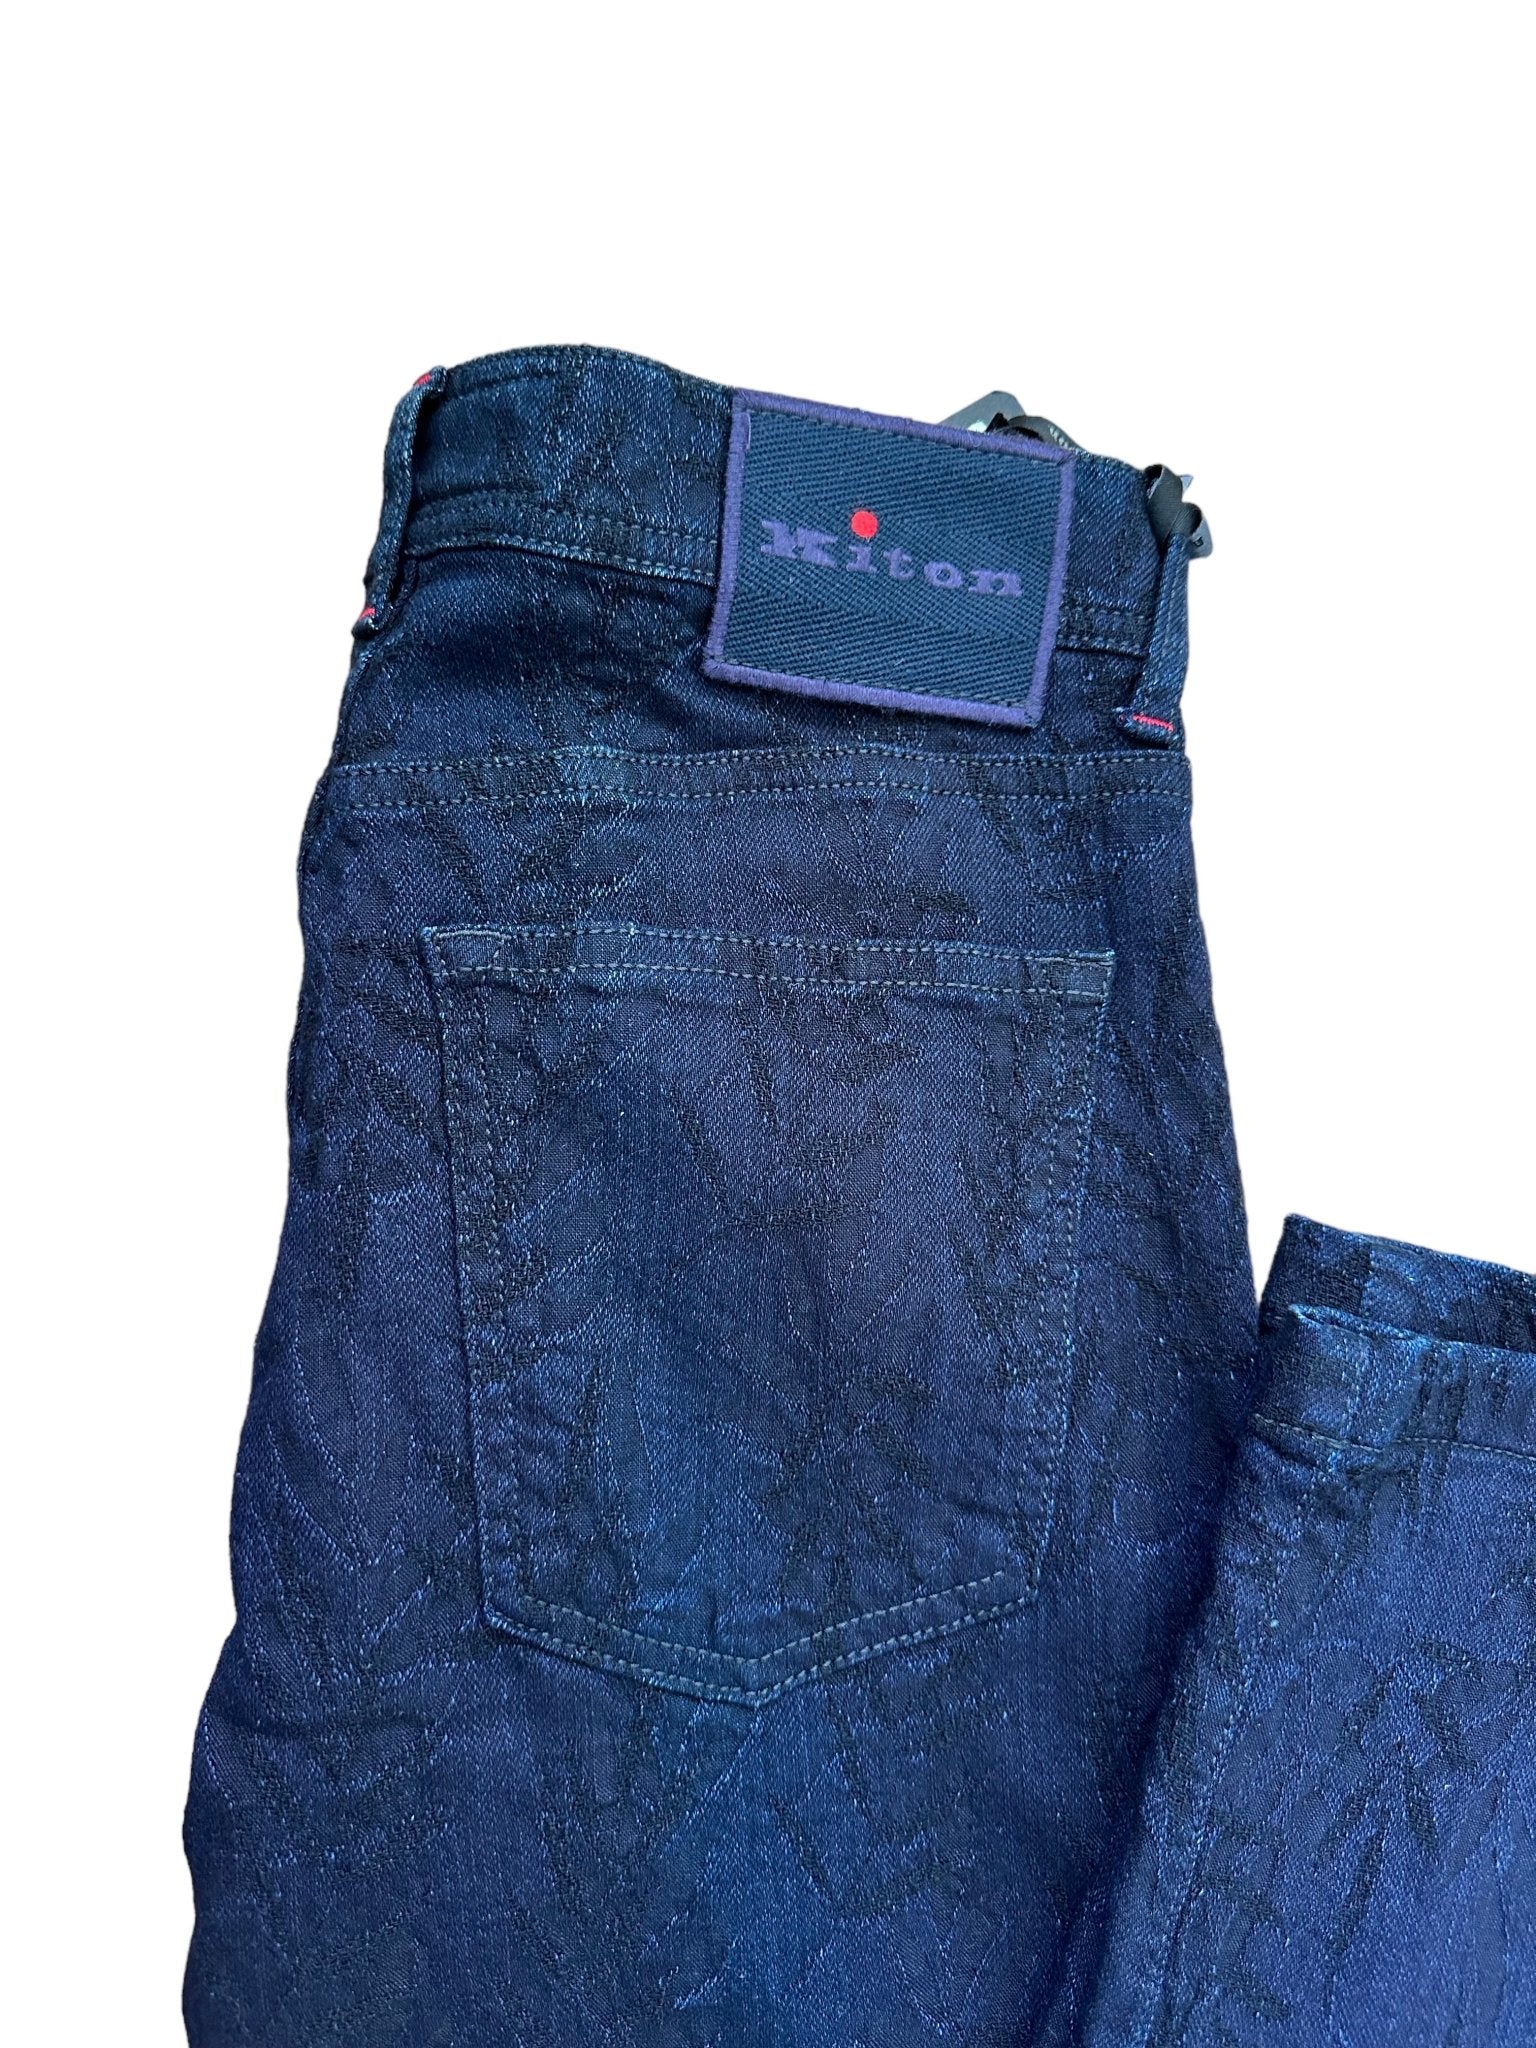 Kiton Jeans/Hose mit gestickten Applikationen - 24/7 Clothing